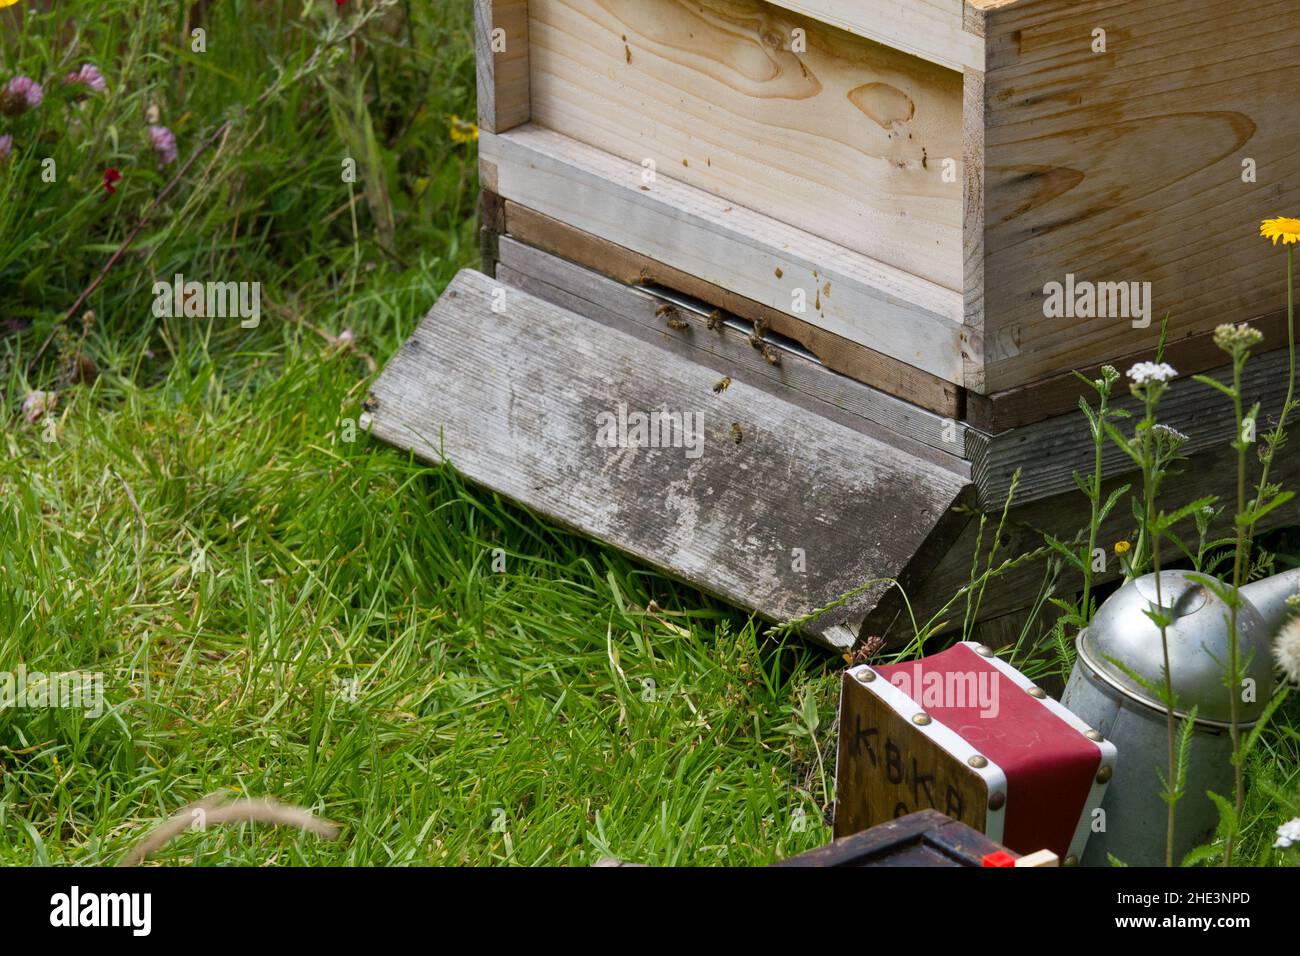 Une ruche de ruche et de nombreuses abeilles d'entrée et de sortie.Un fumeur d'abeille au premier plan. Banque D'Images